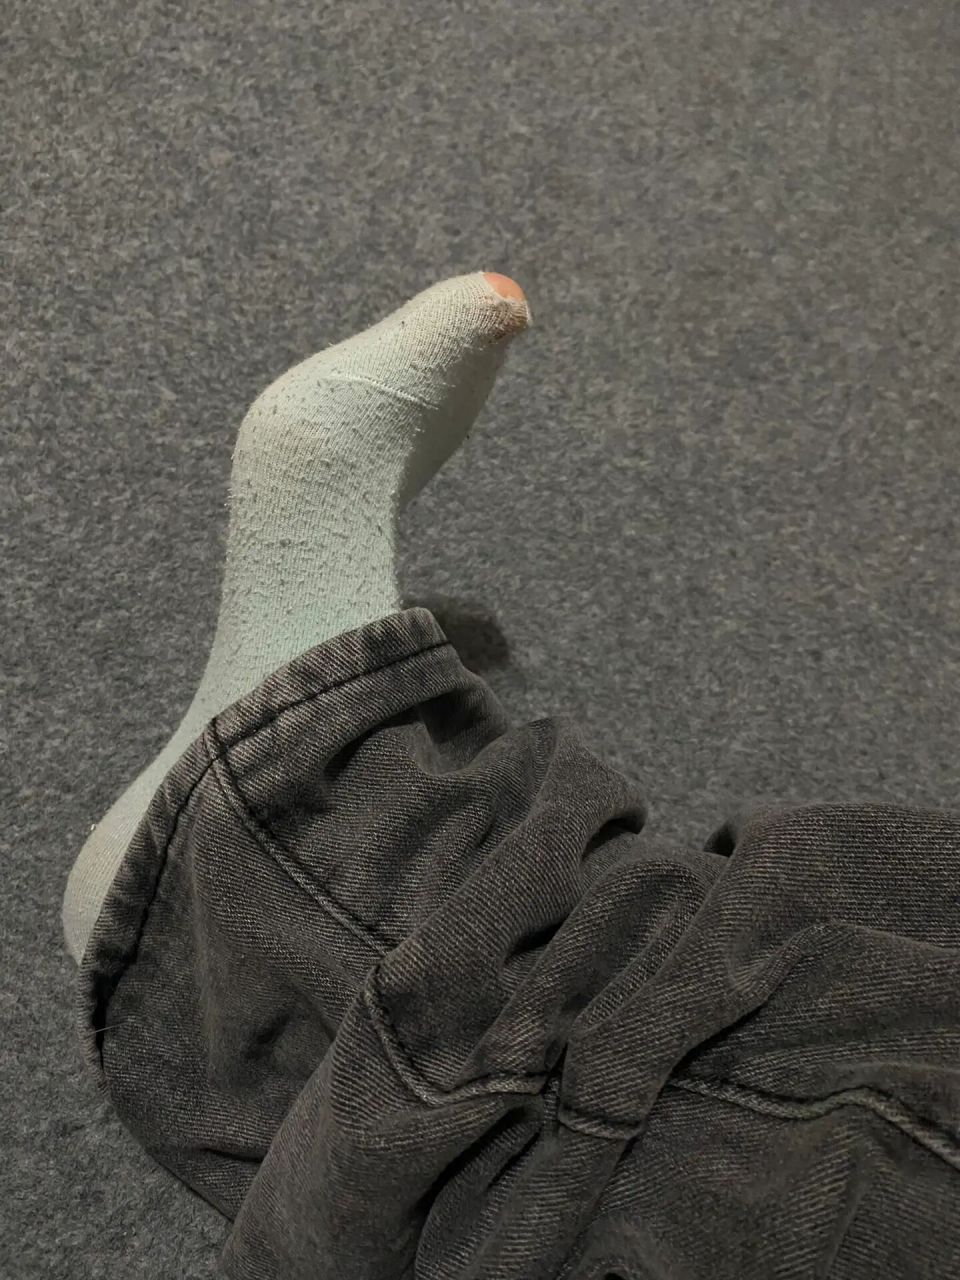 92袜子破个洞,是我身份的象征 因为纯棉的袜子才会破洞(我的是精梳